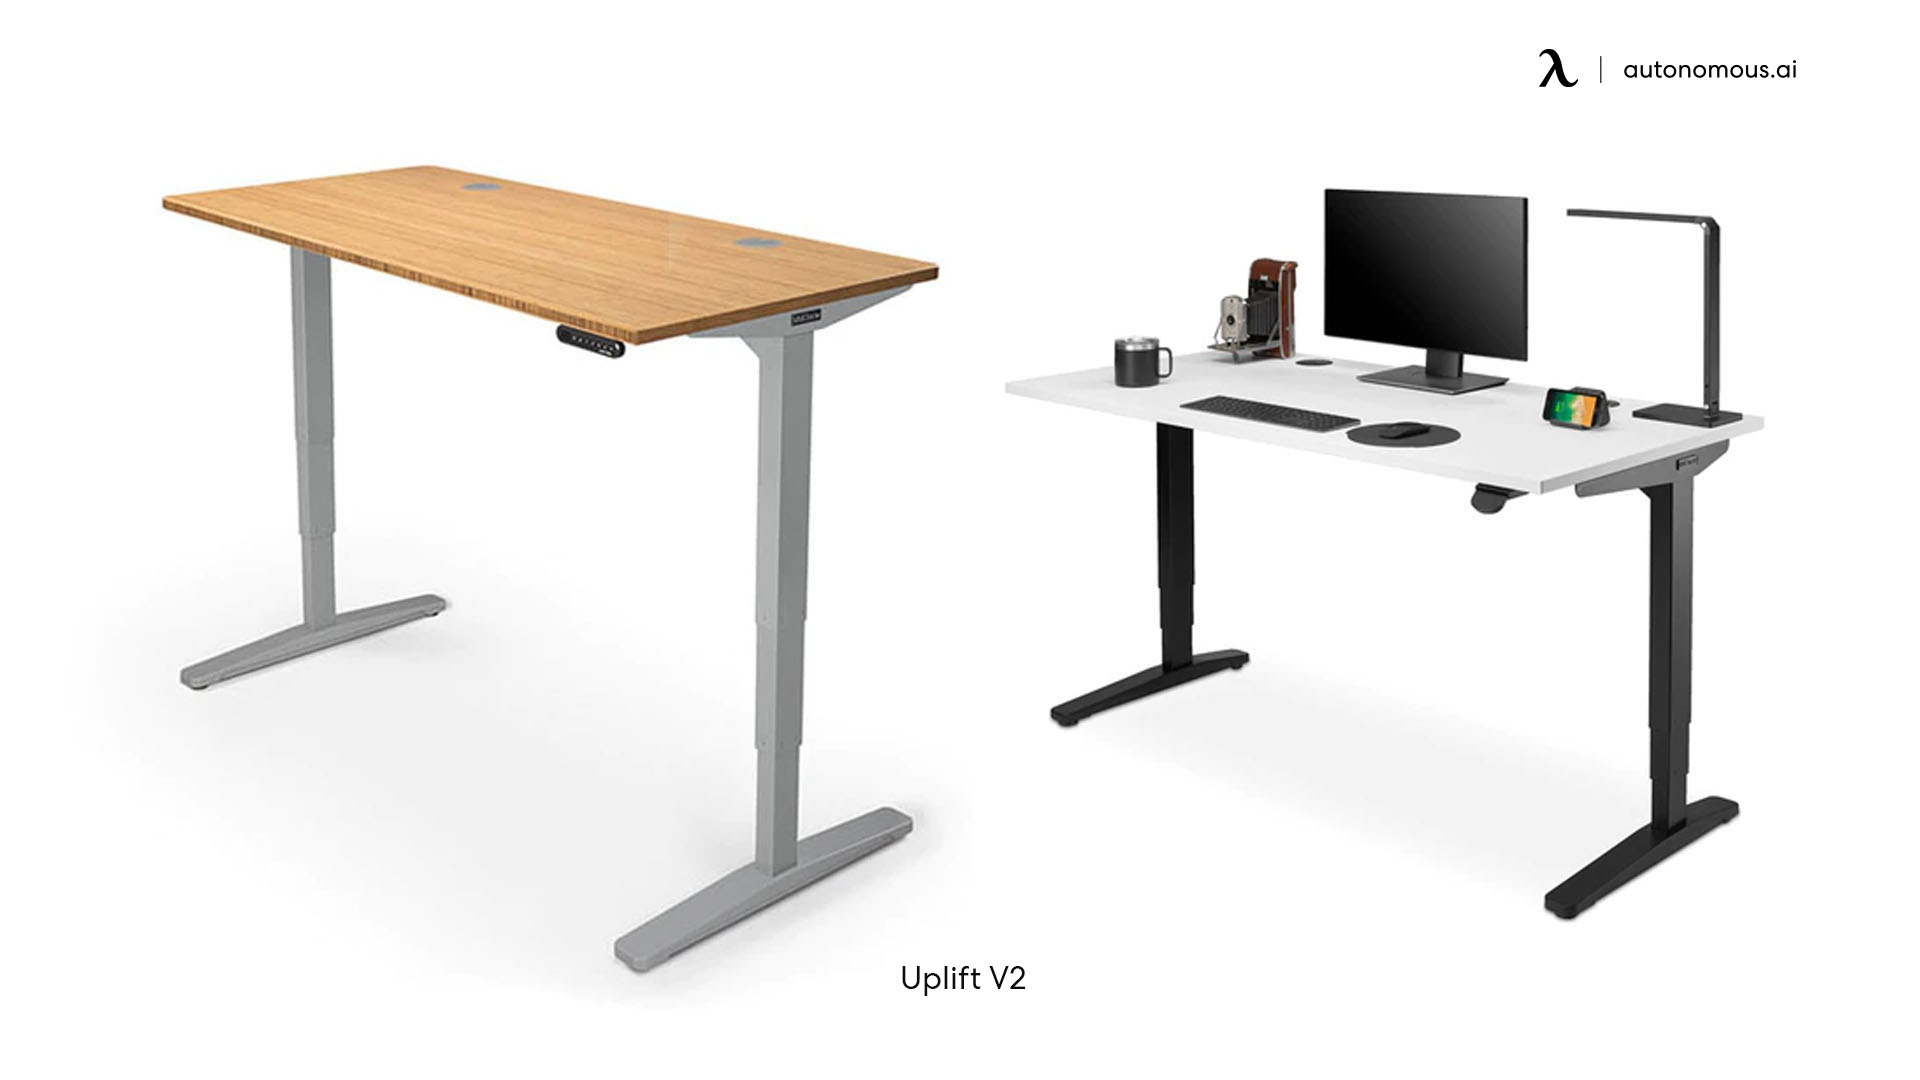 Uplift V2 tech desk